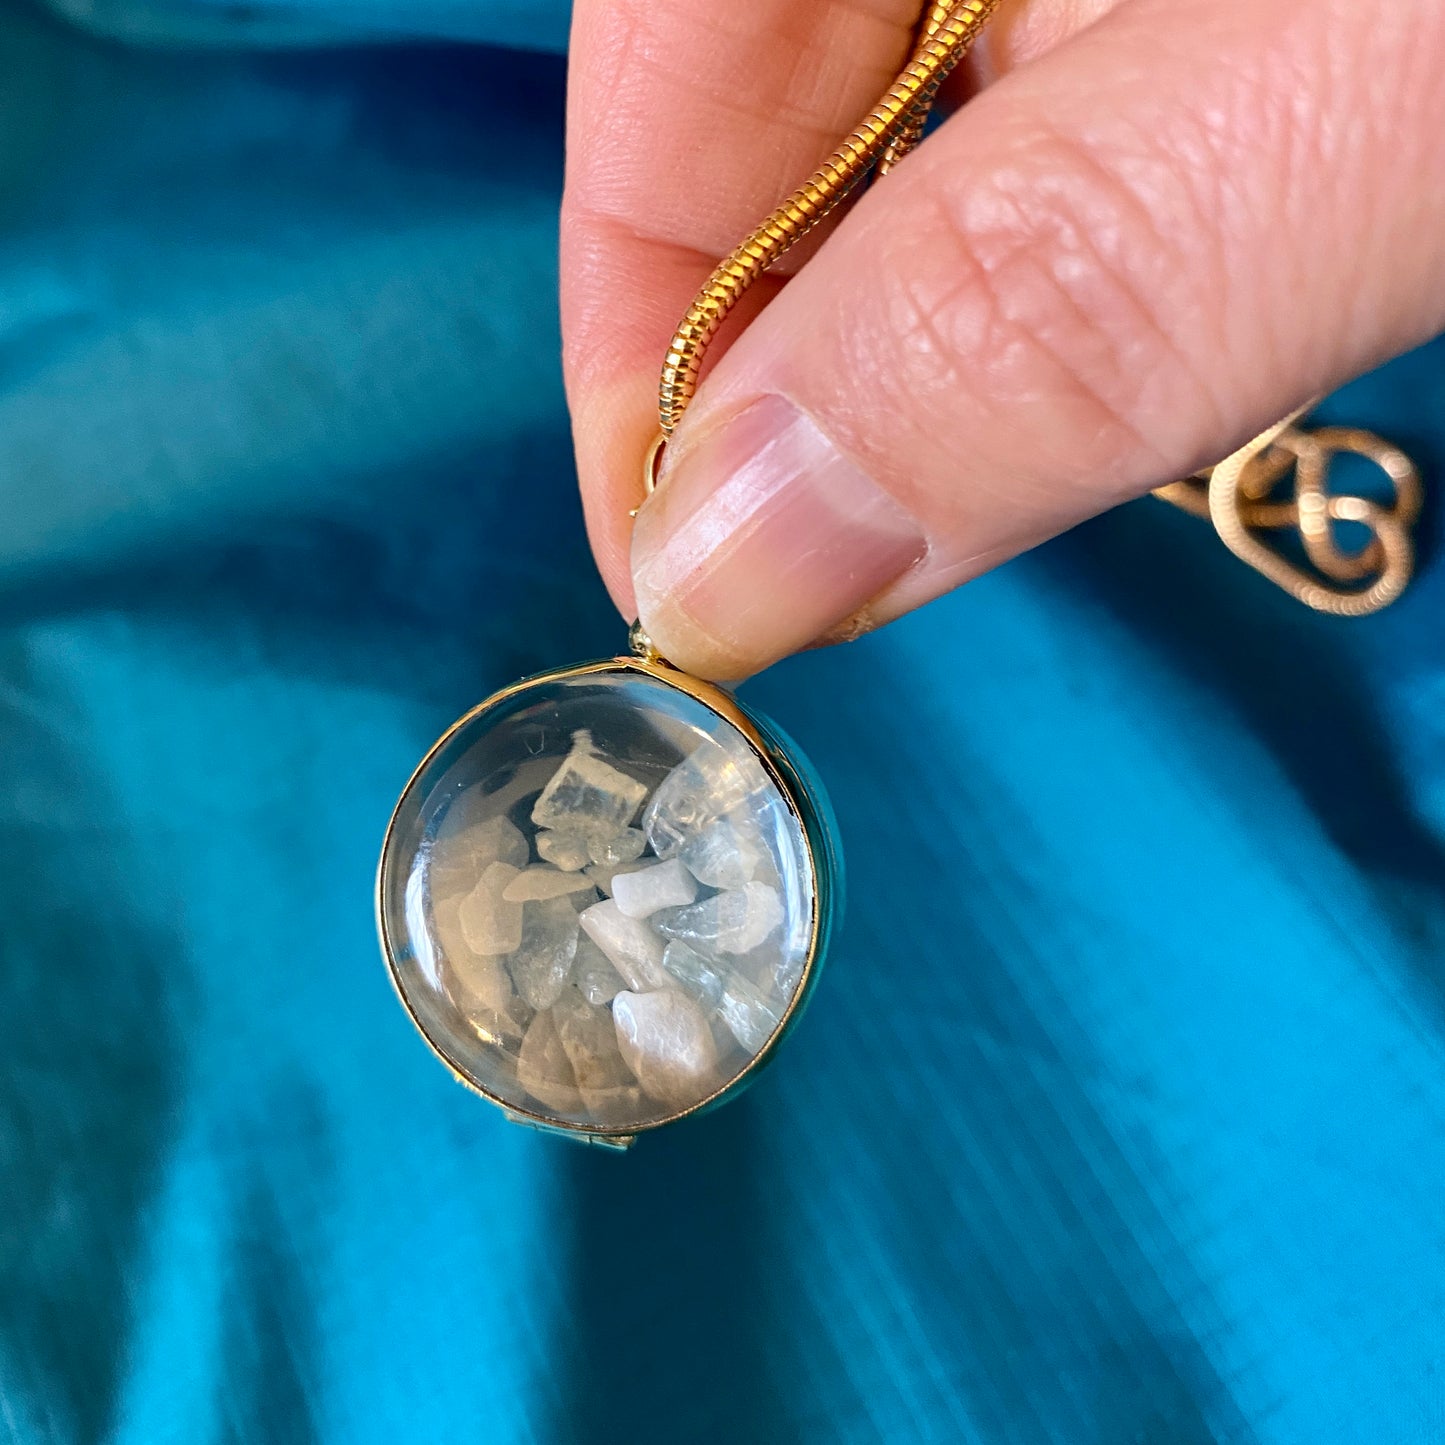 Personalised Locket for Gems, Birthstone Locket Necklace, Engraved Locket, Keepsake Memorial Jewelry Necklace, Beveled Glass Locket Necklace